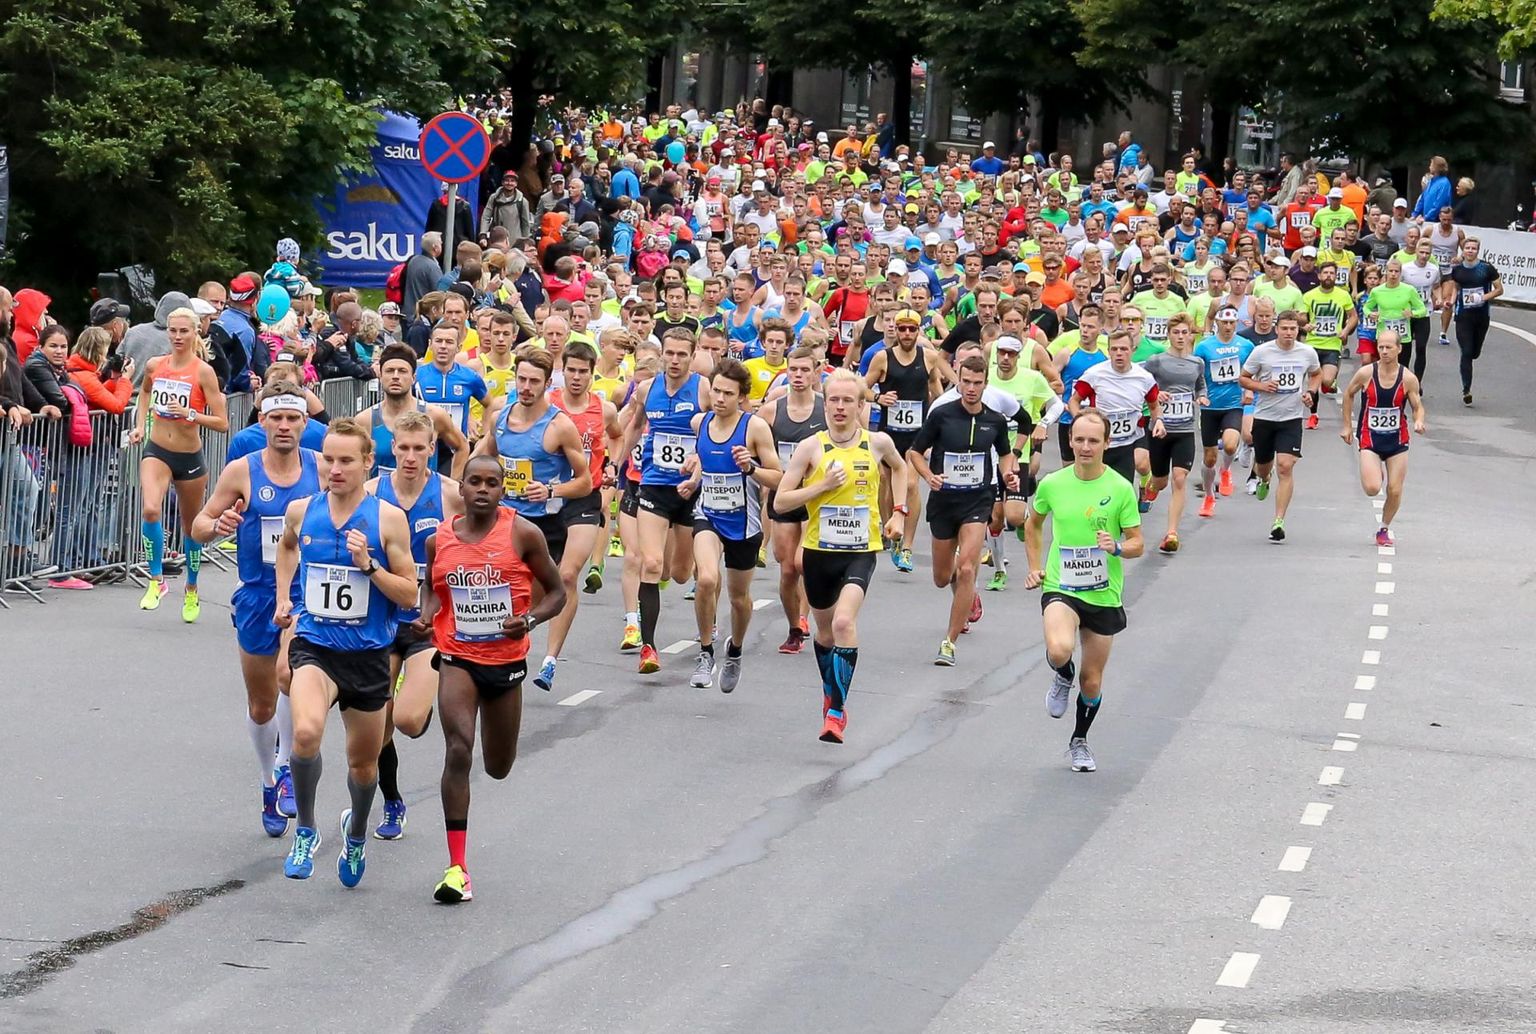 Tänavune Jüri Jaansoni kahe silla jooks toob starti tuhandeid spordisõpru ja pakub ajaloo esimestel kümne kilomeetri maanteejooksu Eesti meistrivõistlustel siinsete tippude heitlust.